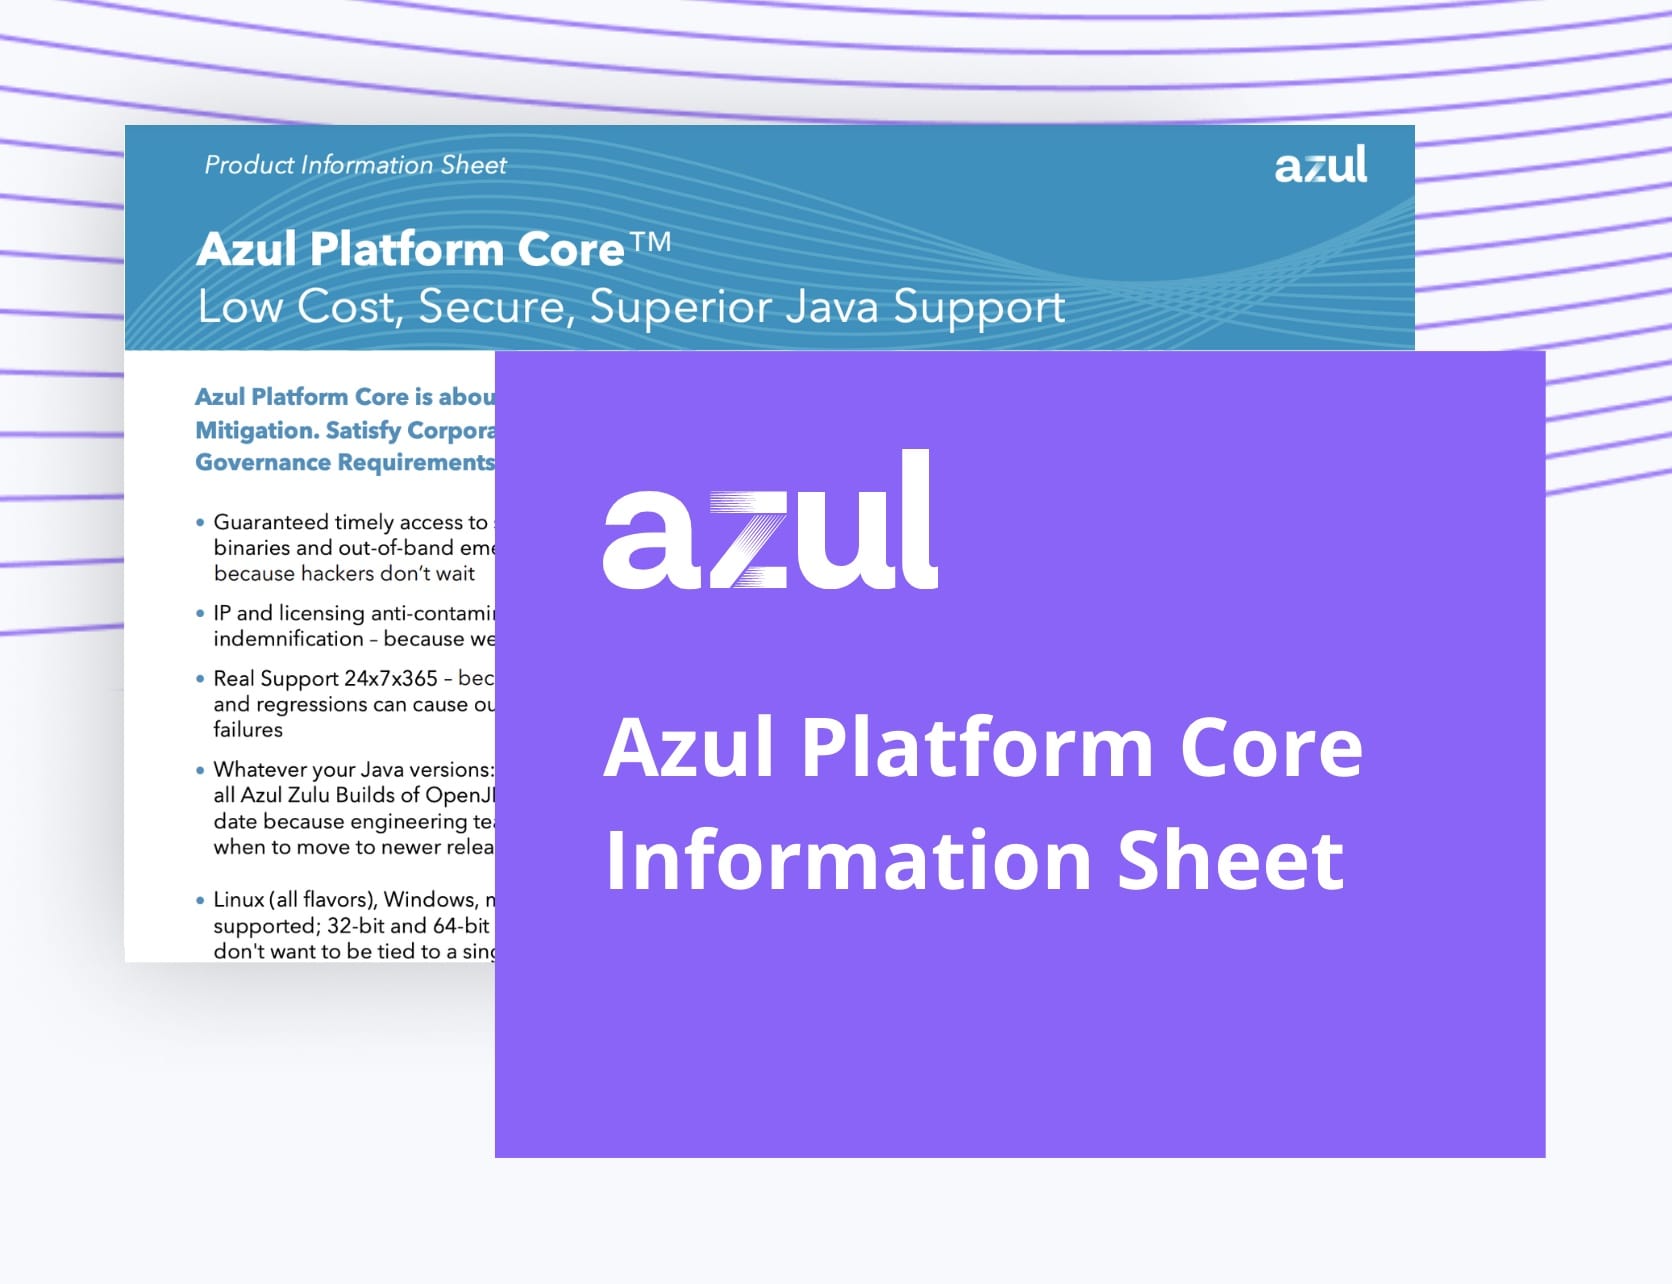 Azul Platform Core Information Sheet